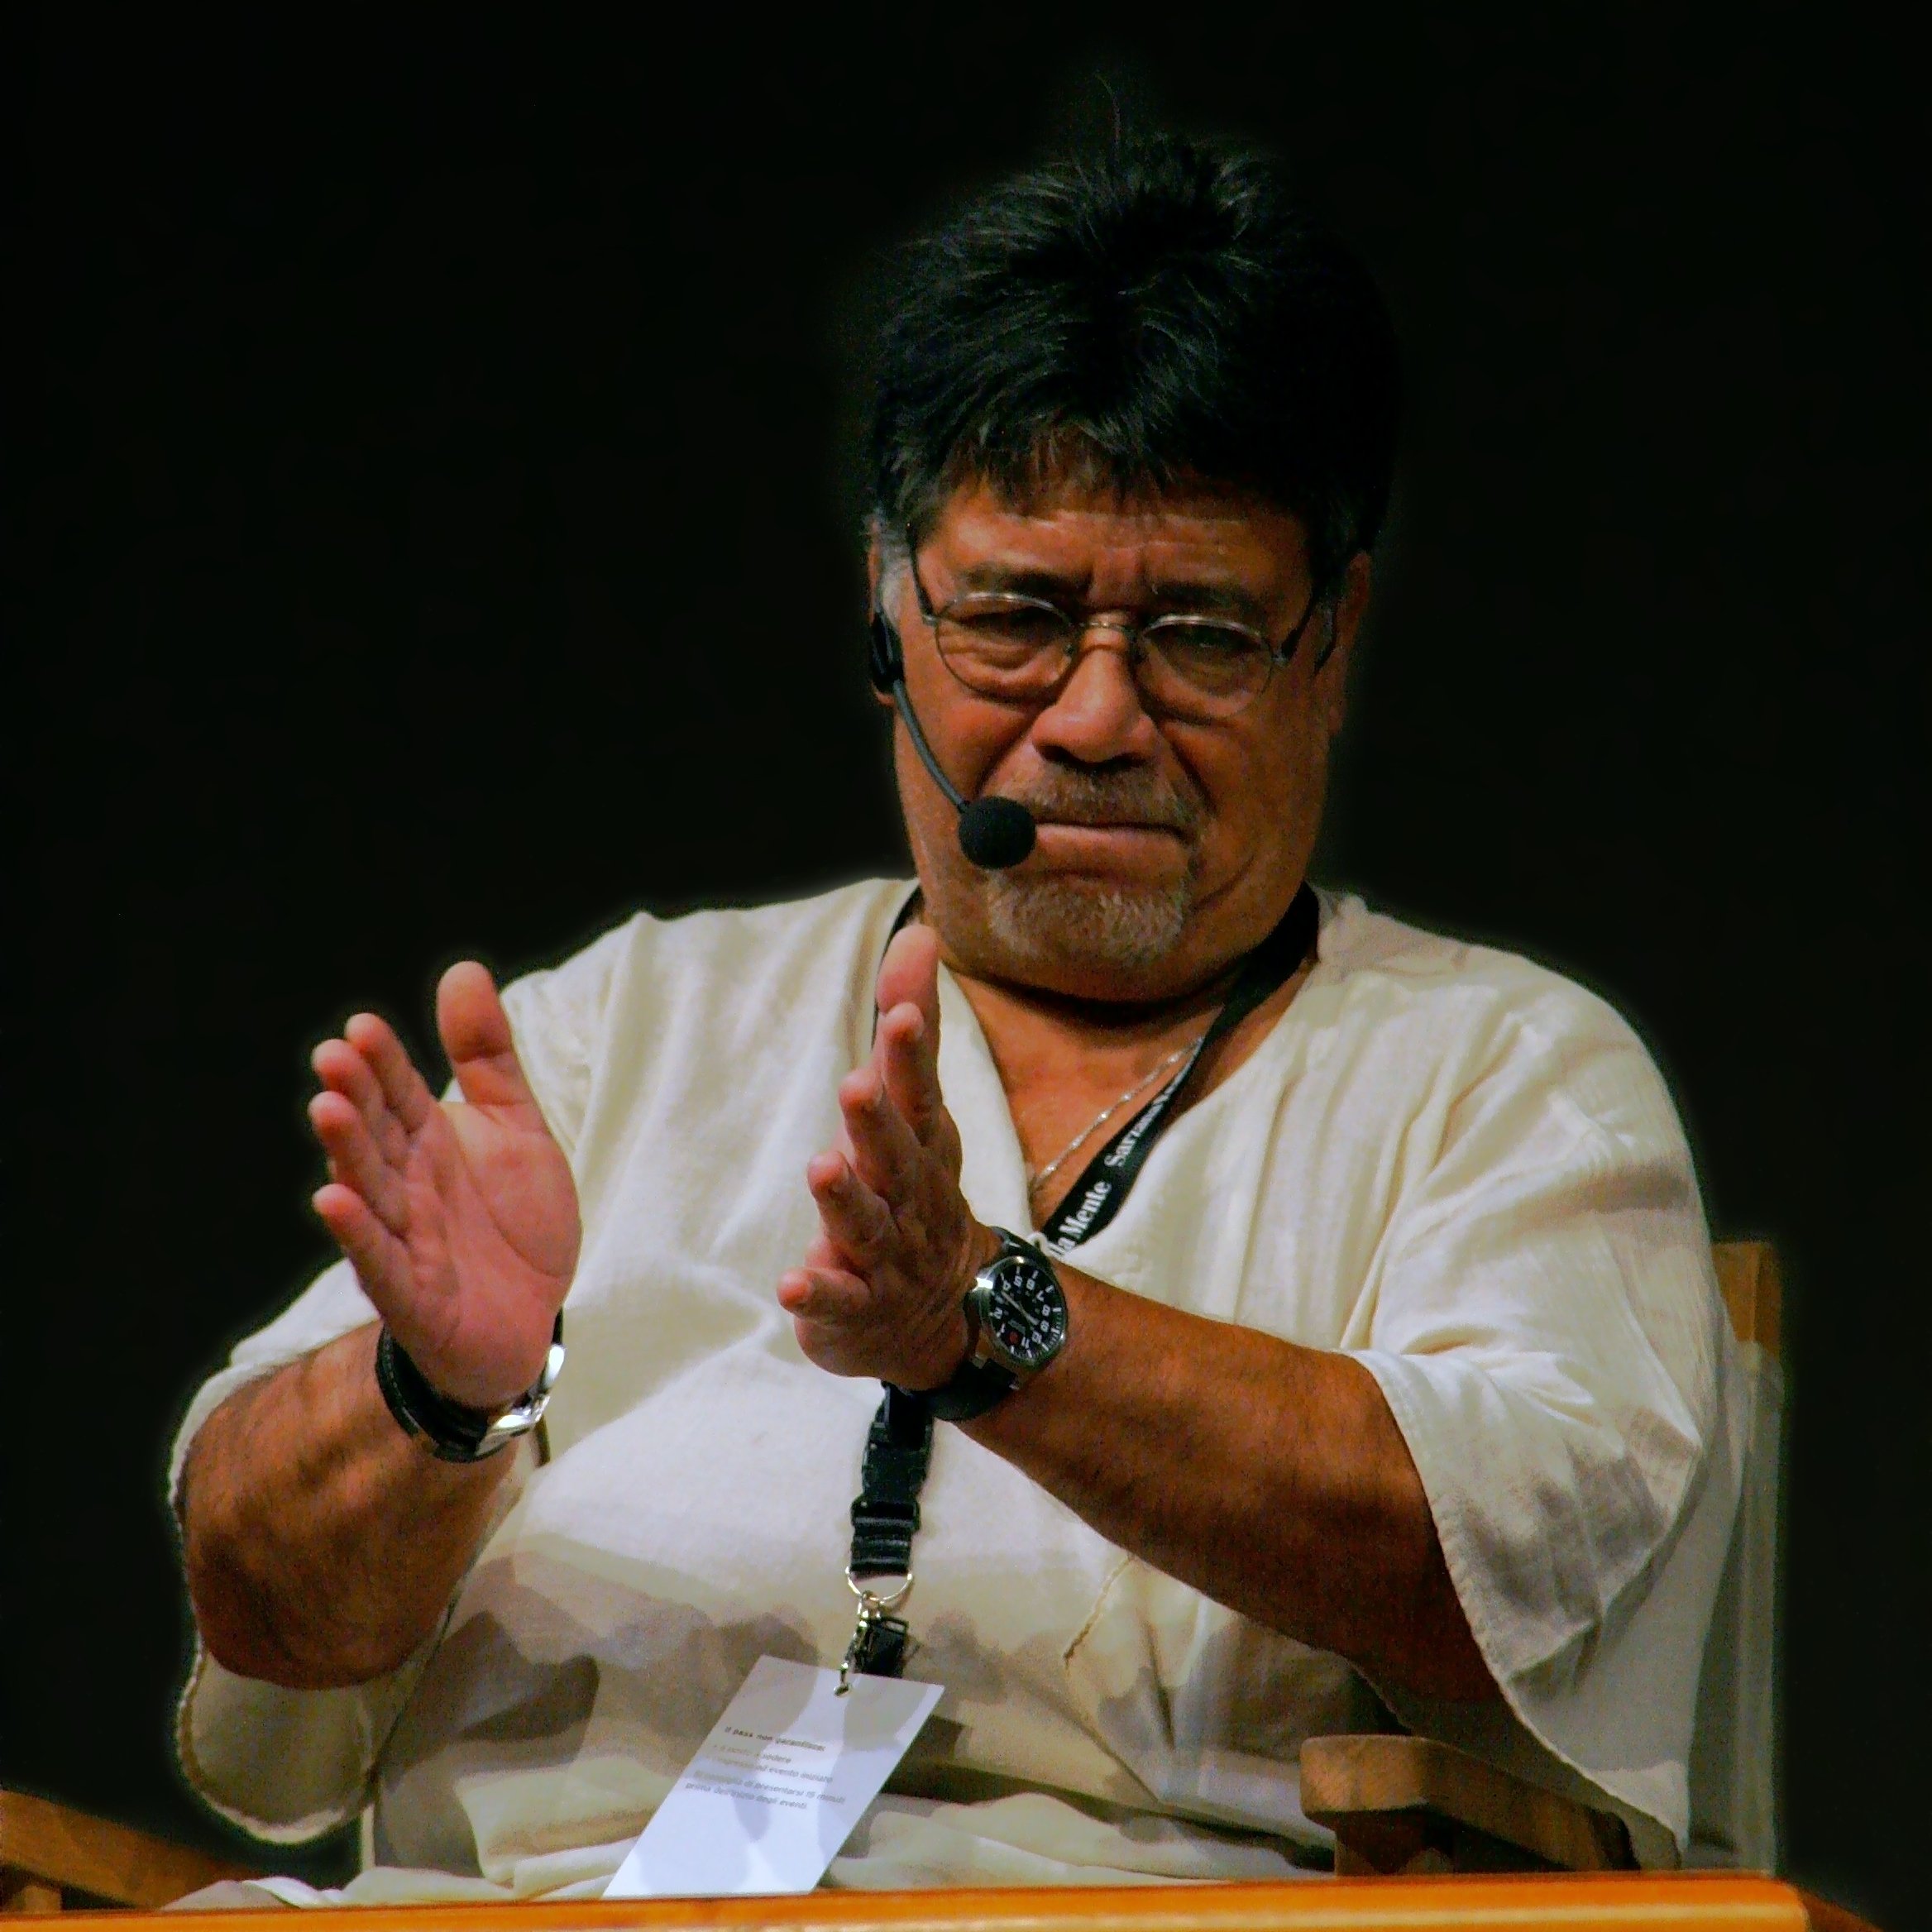 Muere el escritor chileno Luis Sepúlveda, a causa del coronavirus